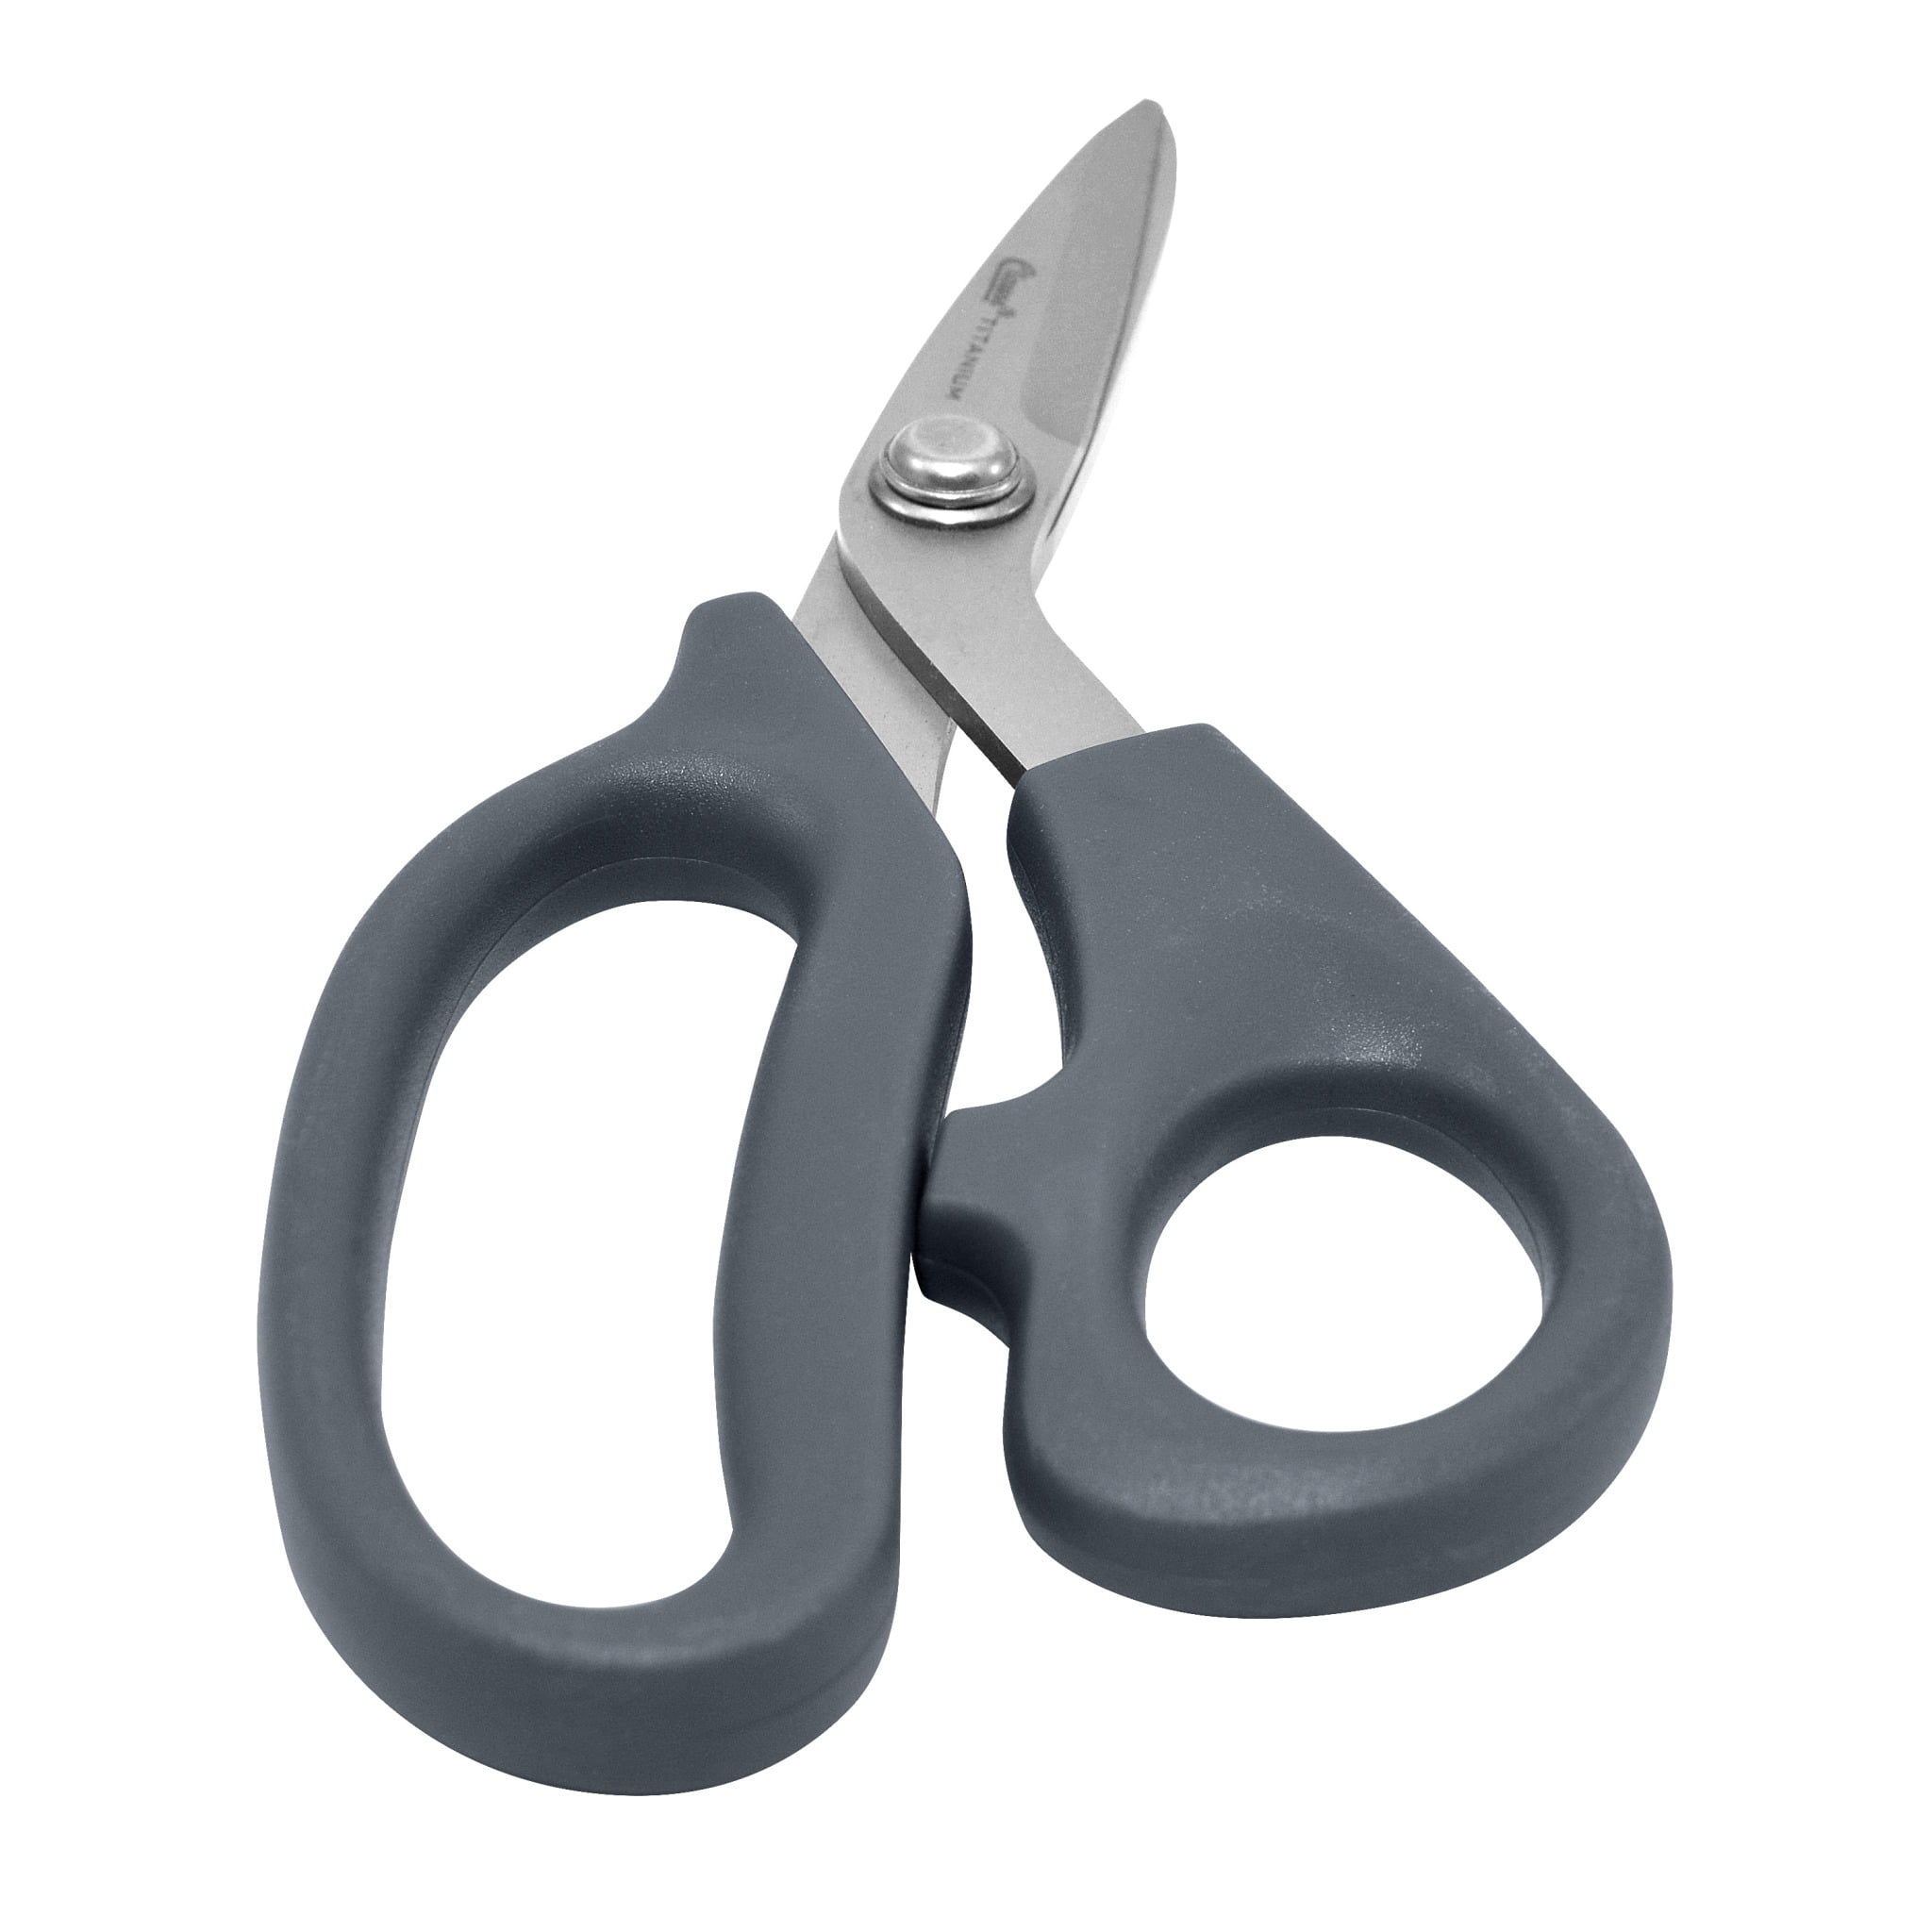 Clauss Titanium Ultraflex Shear Scissors, 7, Bent, Gardening, Gray, 1-Count